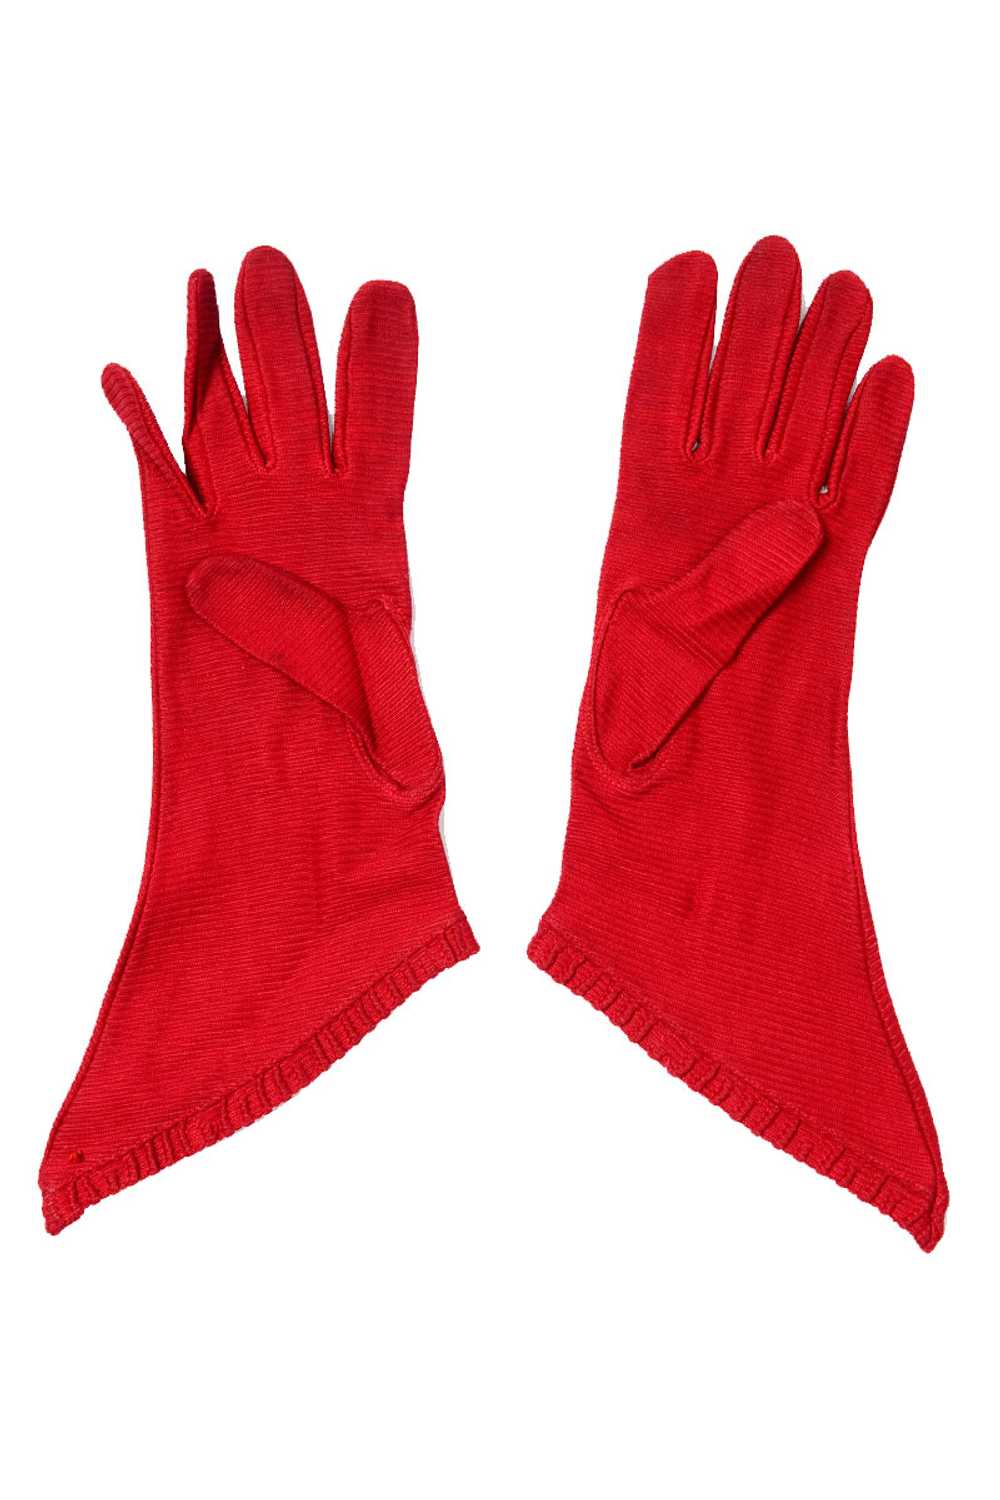 1920s La France Vintage Red Gauntlet Gloves 6 - image 3